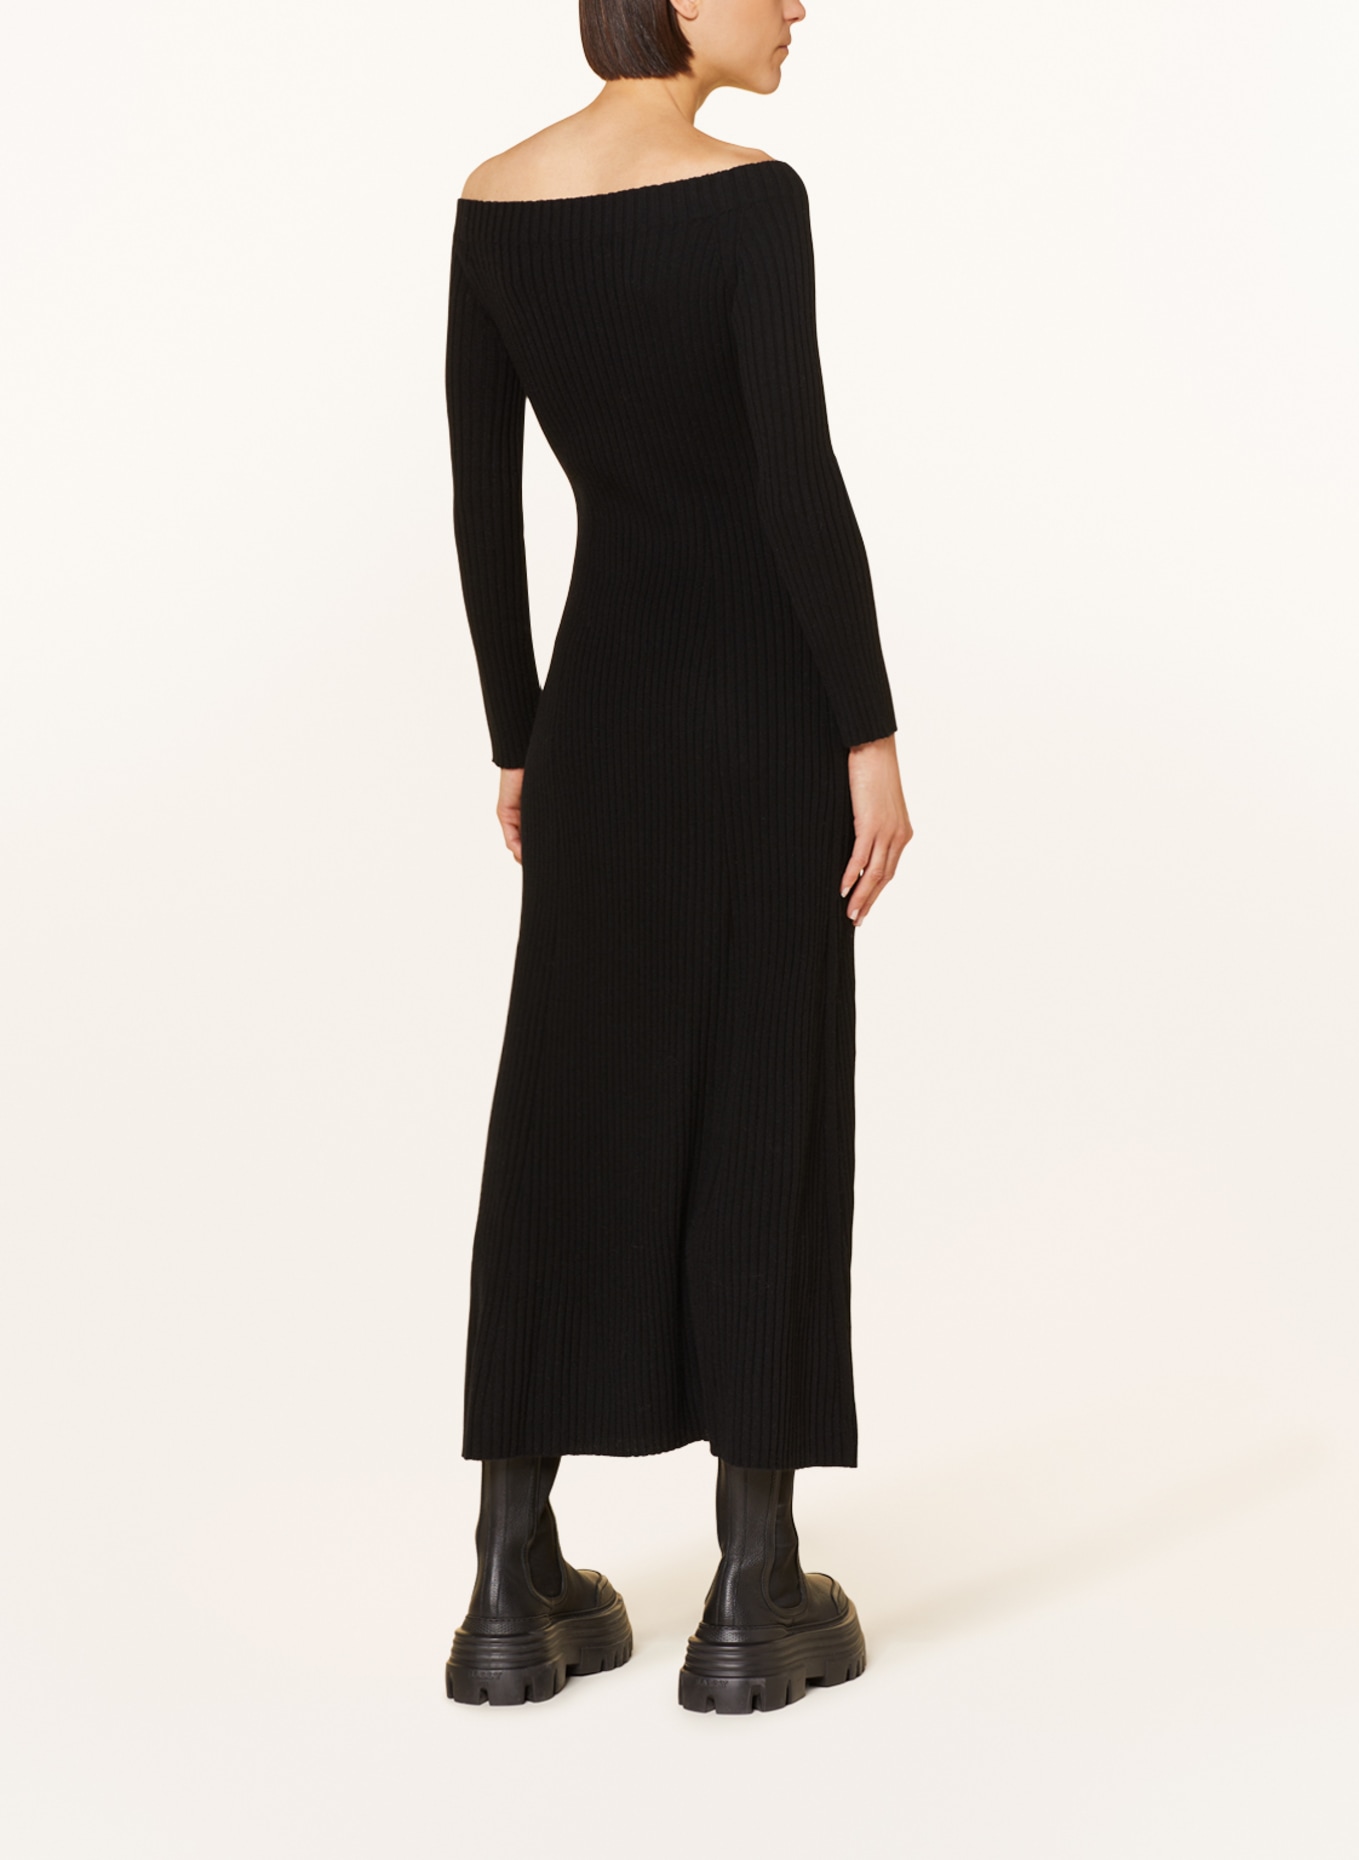 LISA YANG Knit dress MARVIN in cashmere, Color: BLACK (Image 3)